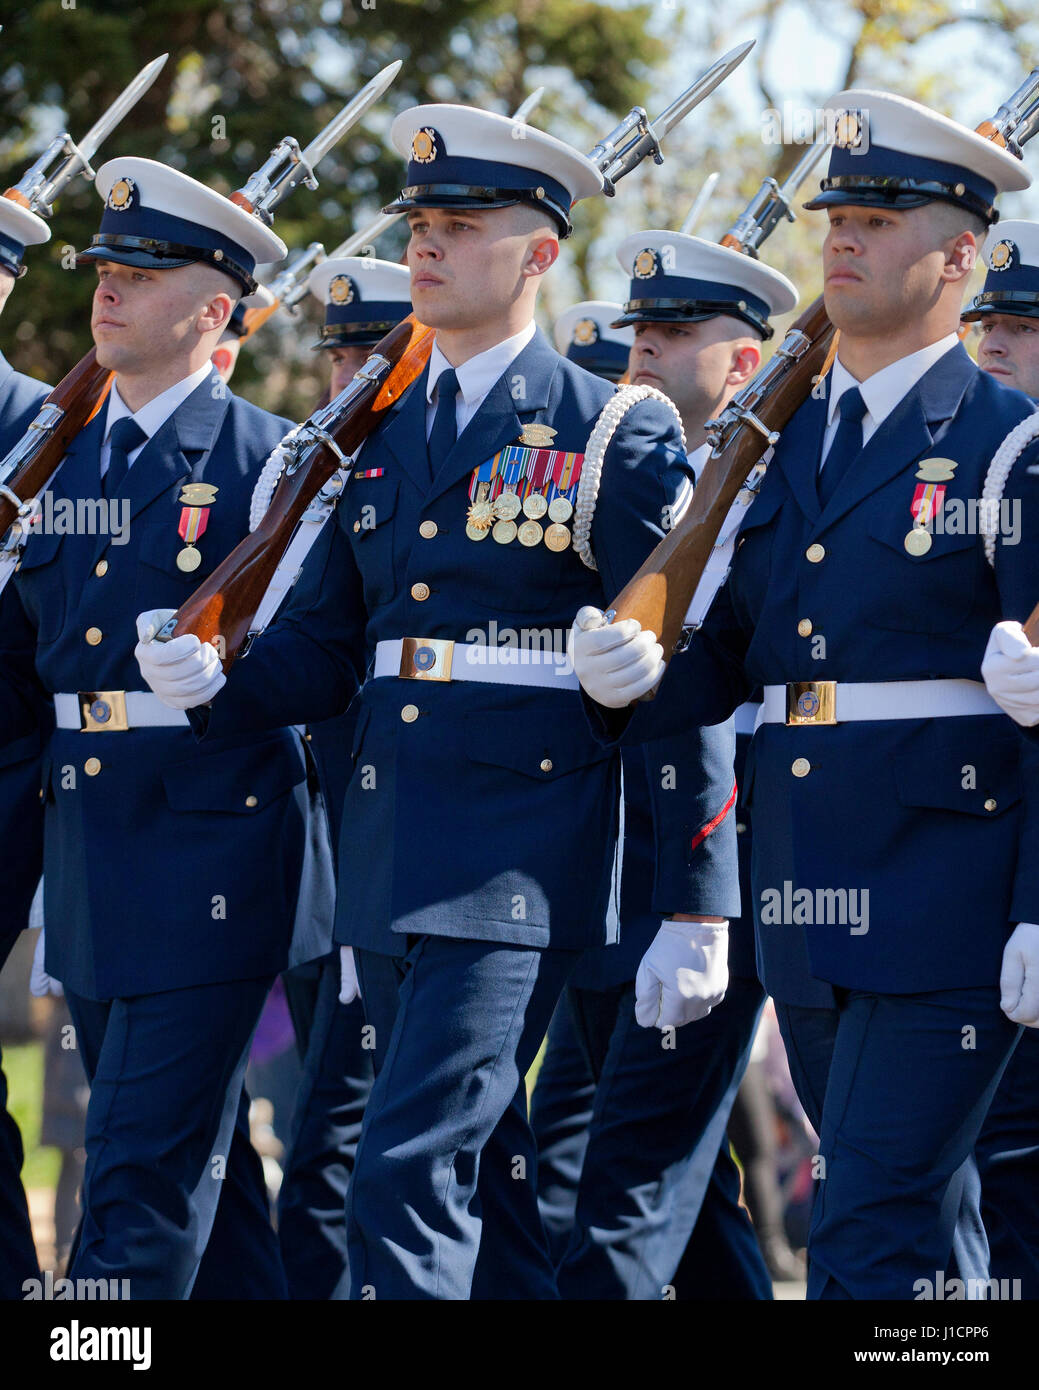 US Coast Guard Honor Guard marching during parade - Washington, DC USA Stock Photo